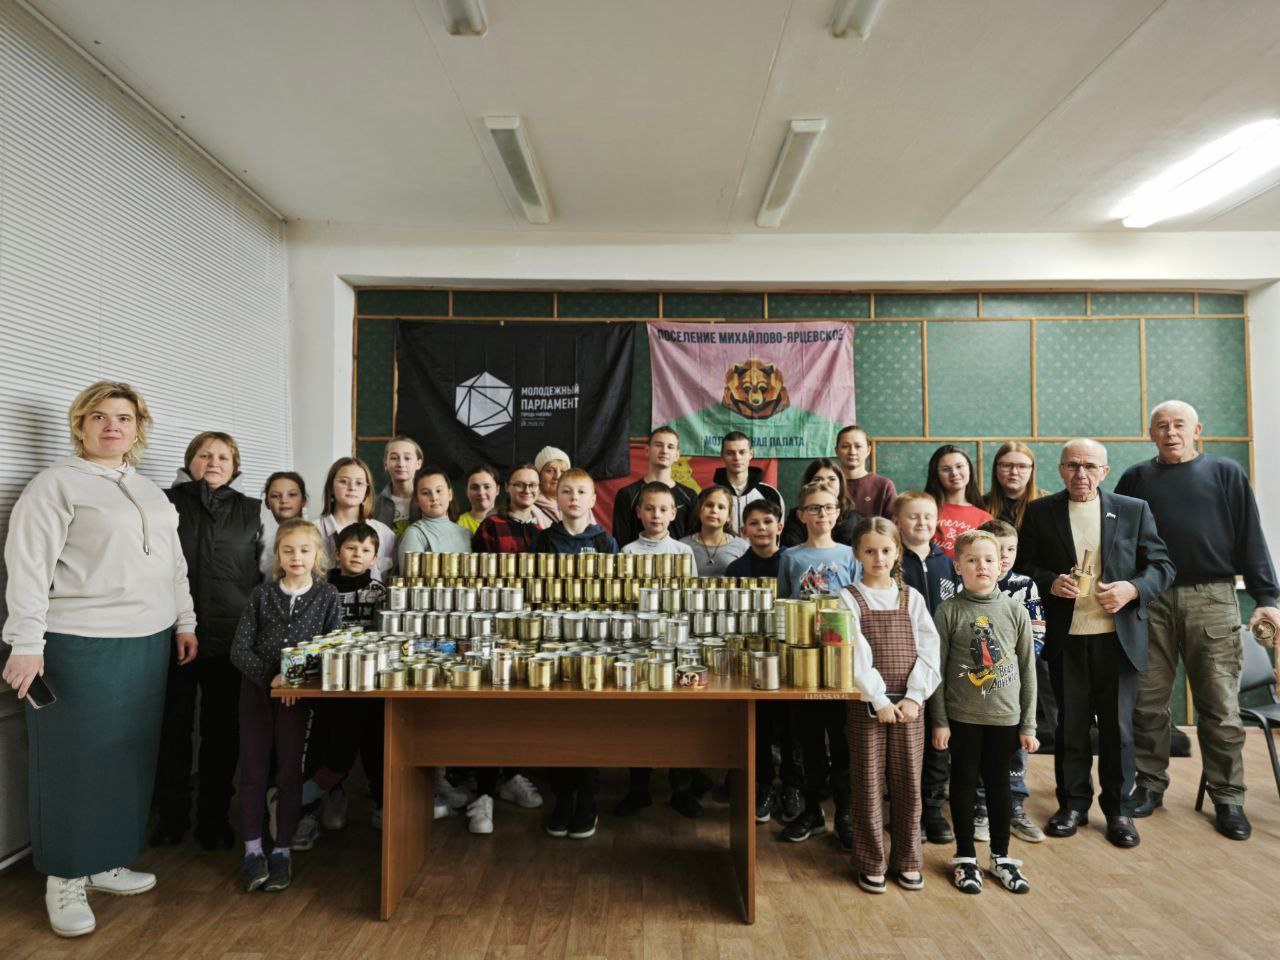 24 ноября в рамках акции "Тепло наших сердец" прошёл мастер-класс по изготовлению окопных свечей и маскировочных сетей, организованный Молодёжной палатой Михайлово-Ярцевского